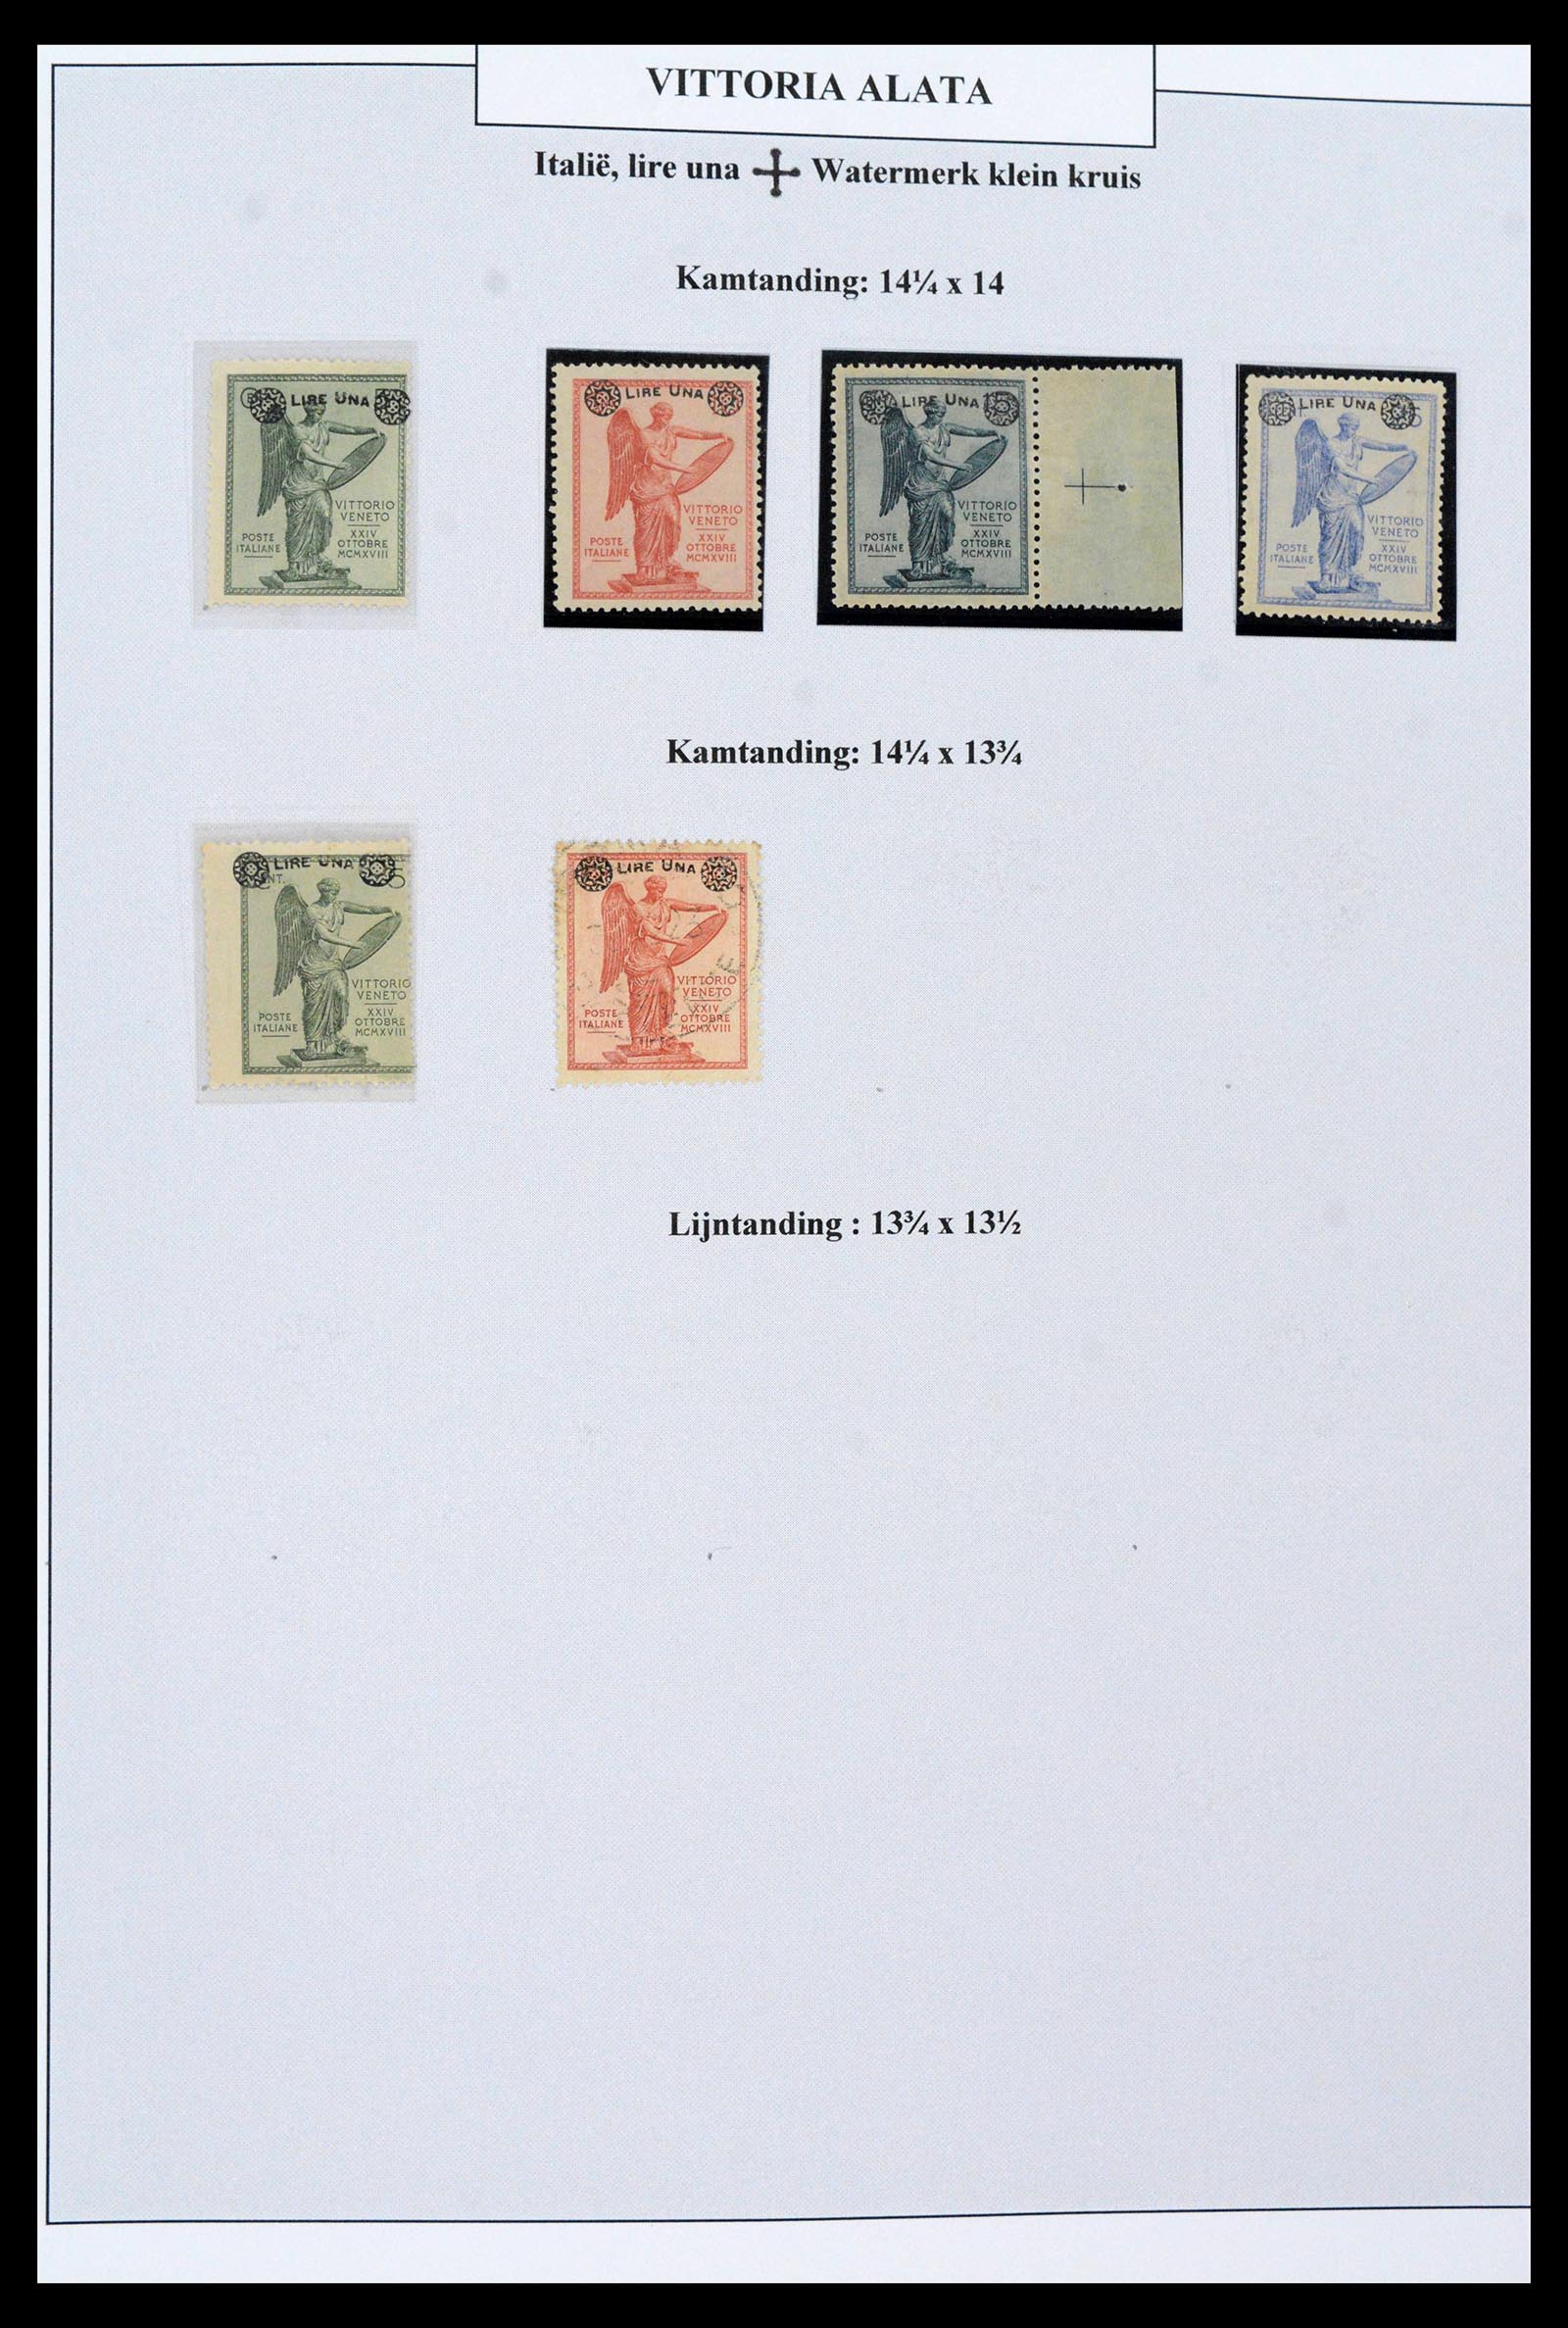 38515 0033 - Postzegelverzameling 38515 Italië en koloniën speciaalverzameling Vit